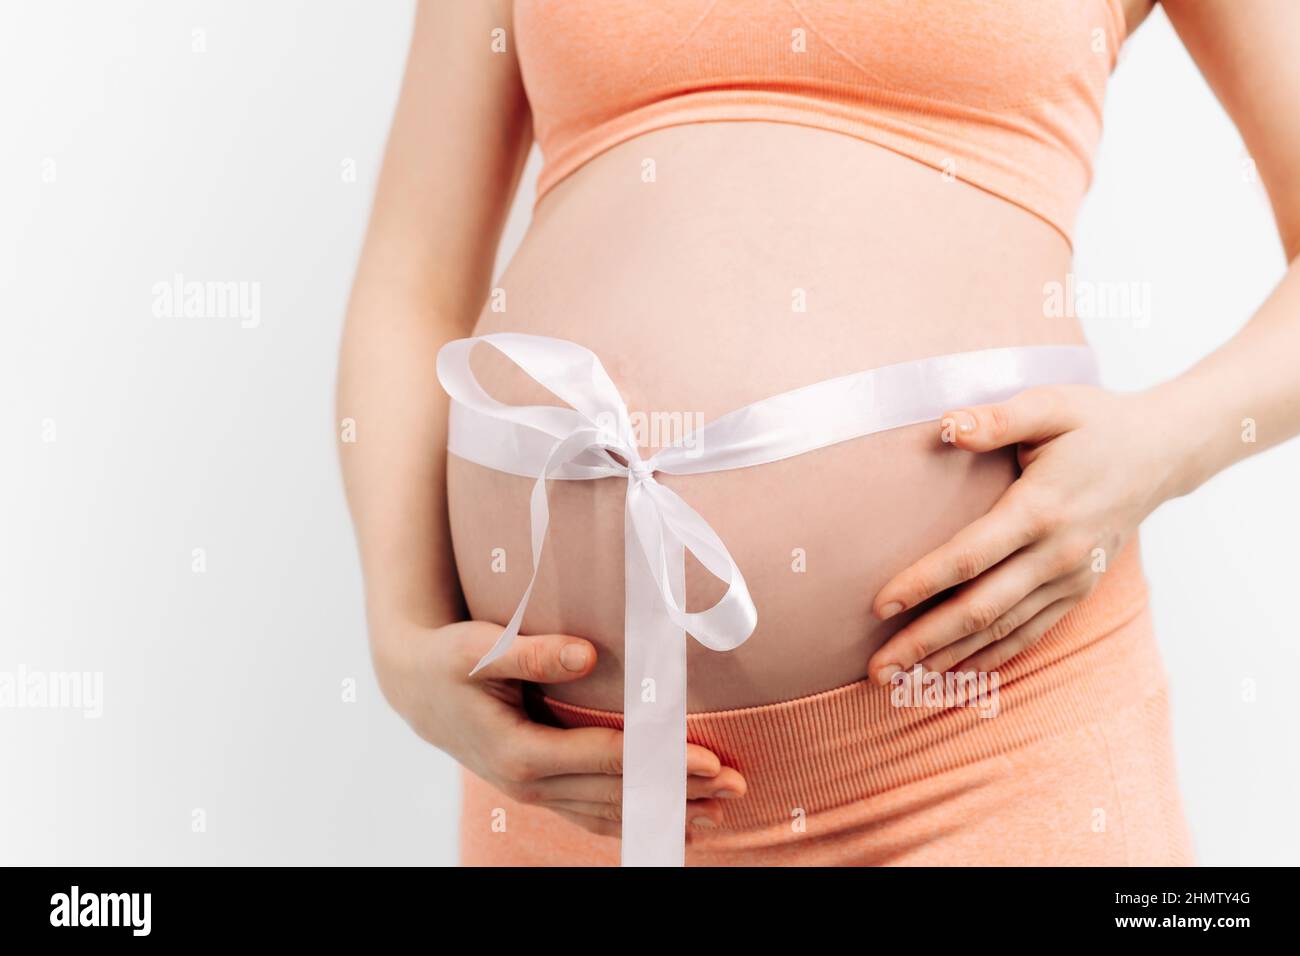 femme enceinte avec un ruban adhésif sur son ventre touchant son ventre .  Femme s'attendant à un bébé, femme enceinte heureuse avec un gros ventre.  Le concept de grossesse Photo Stock -